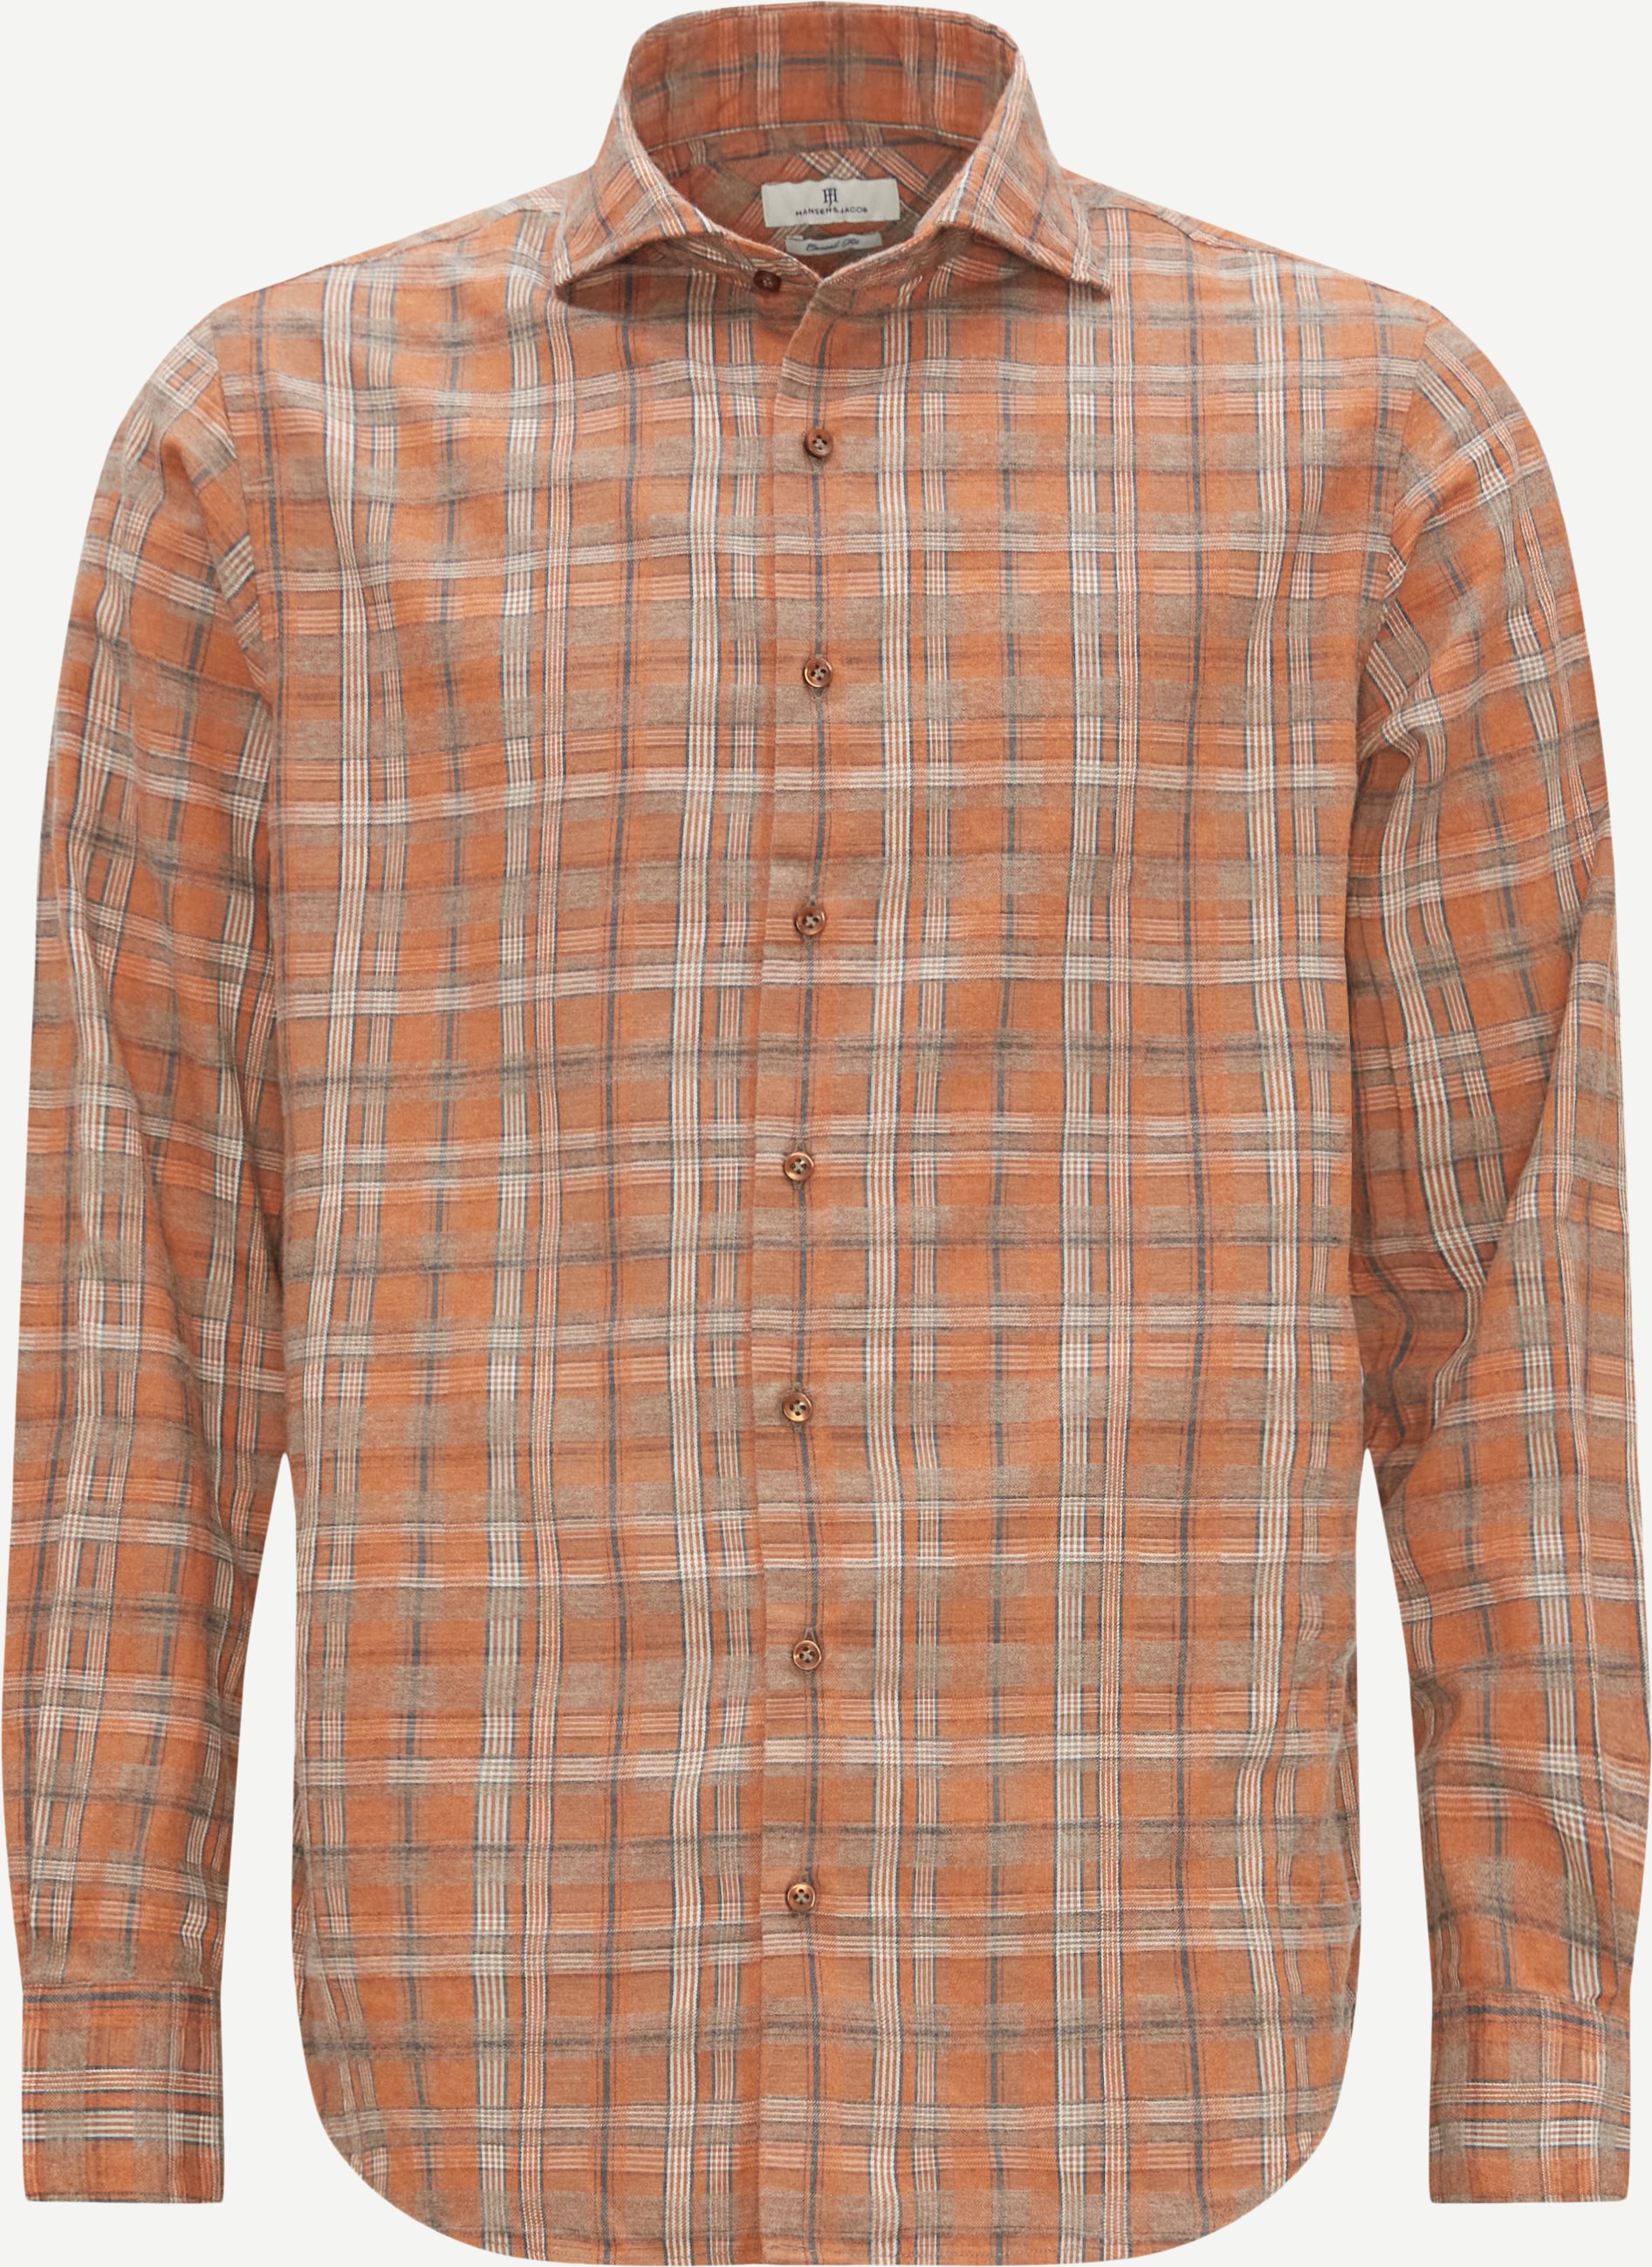 Hansen & Jacob Shirts 11282 GRAFITE FLANNEL CHECK SHIRT Orange